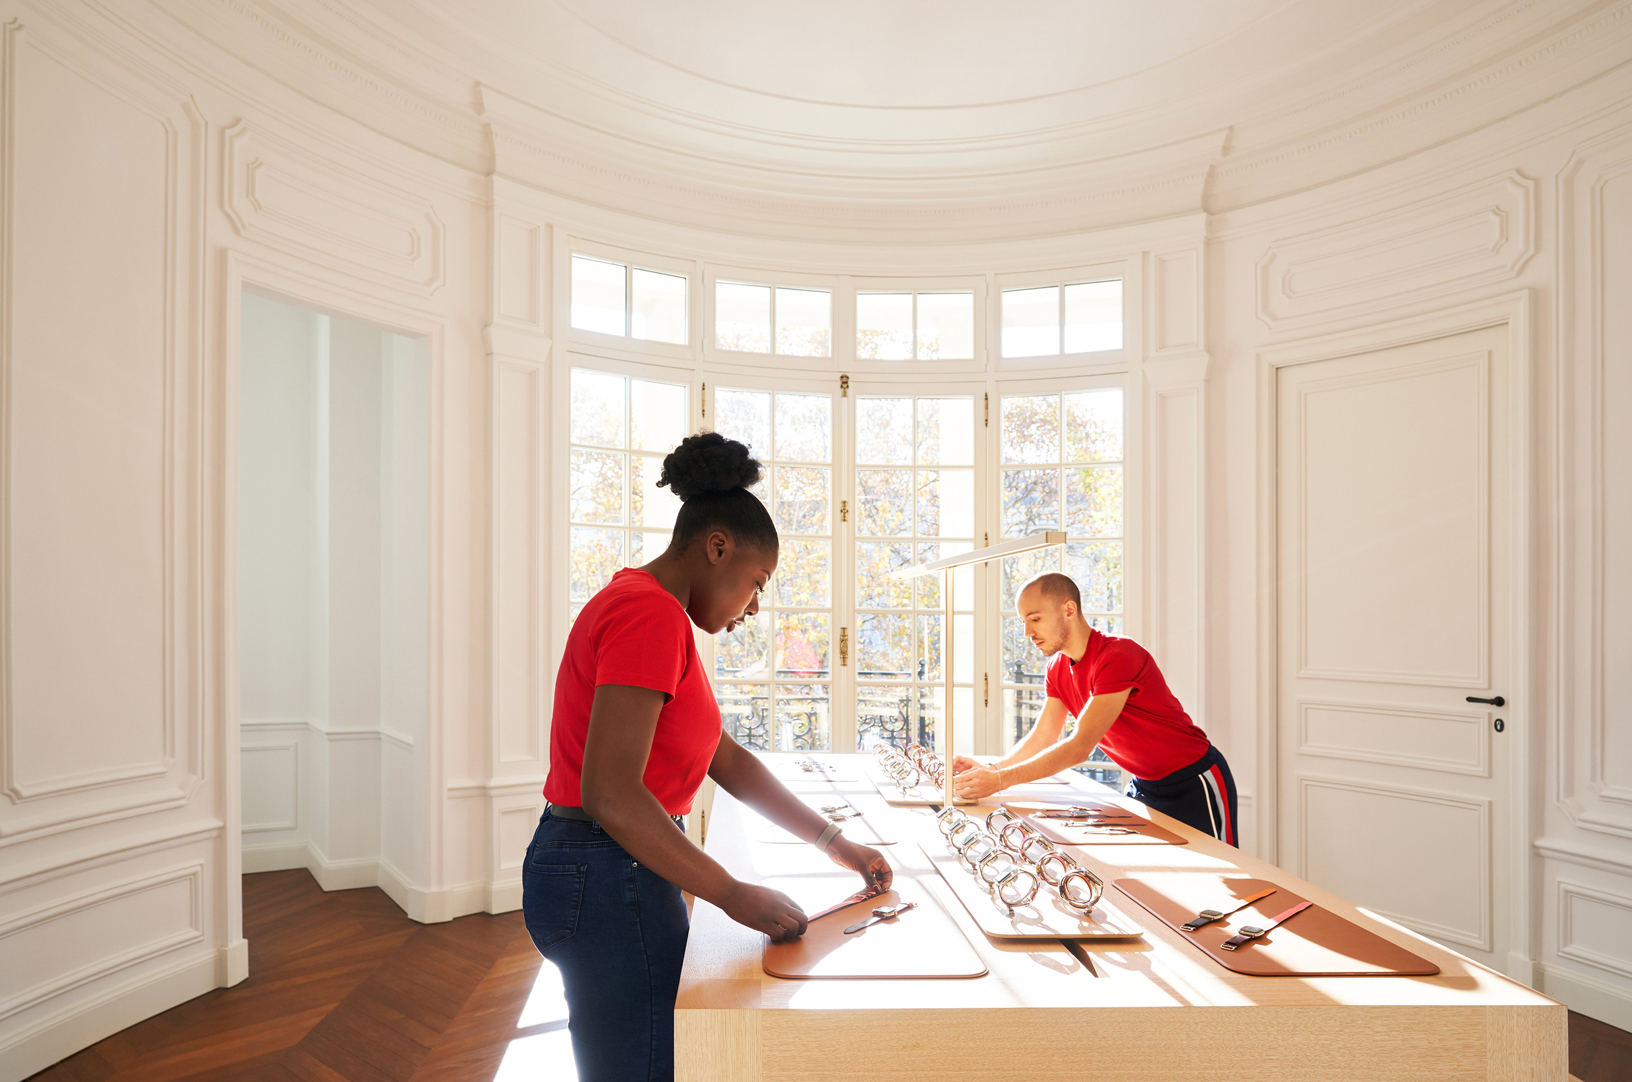 Apple Store Champs-Élysées: un omaggio alla storia di Parigi e alla creatività